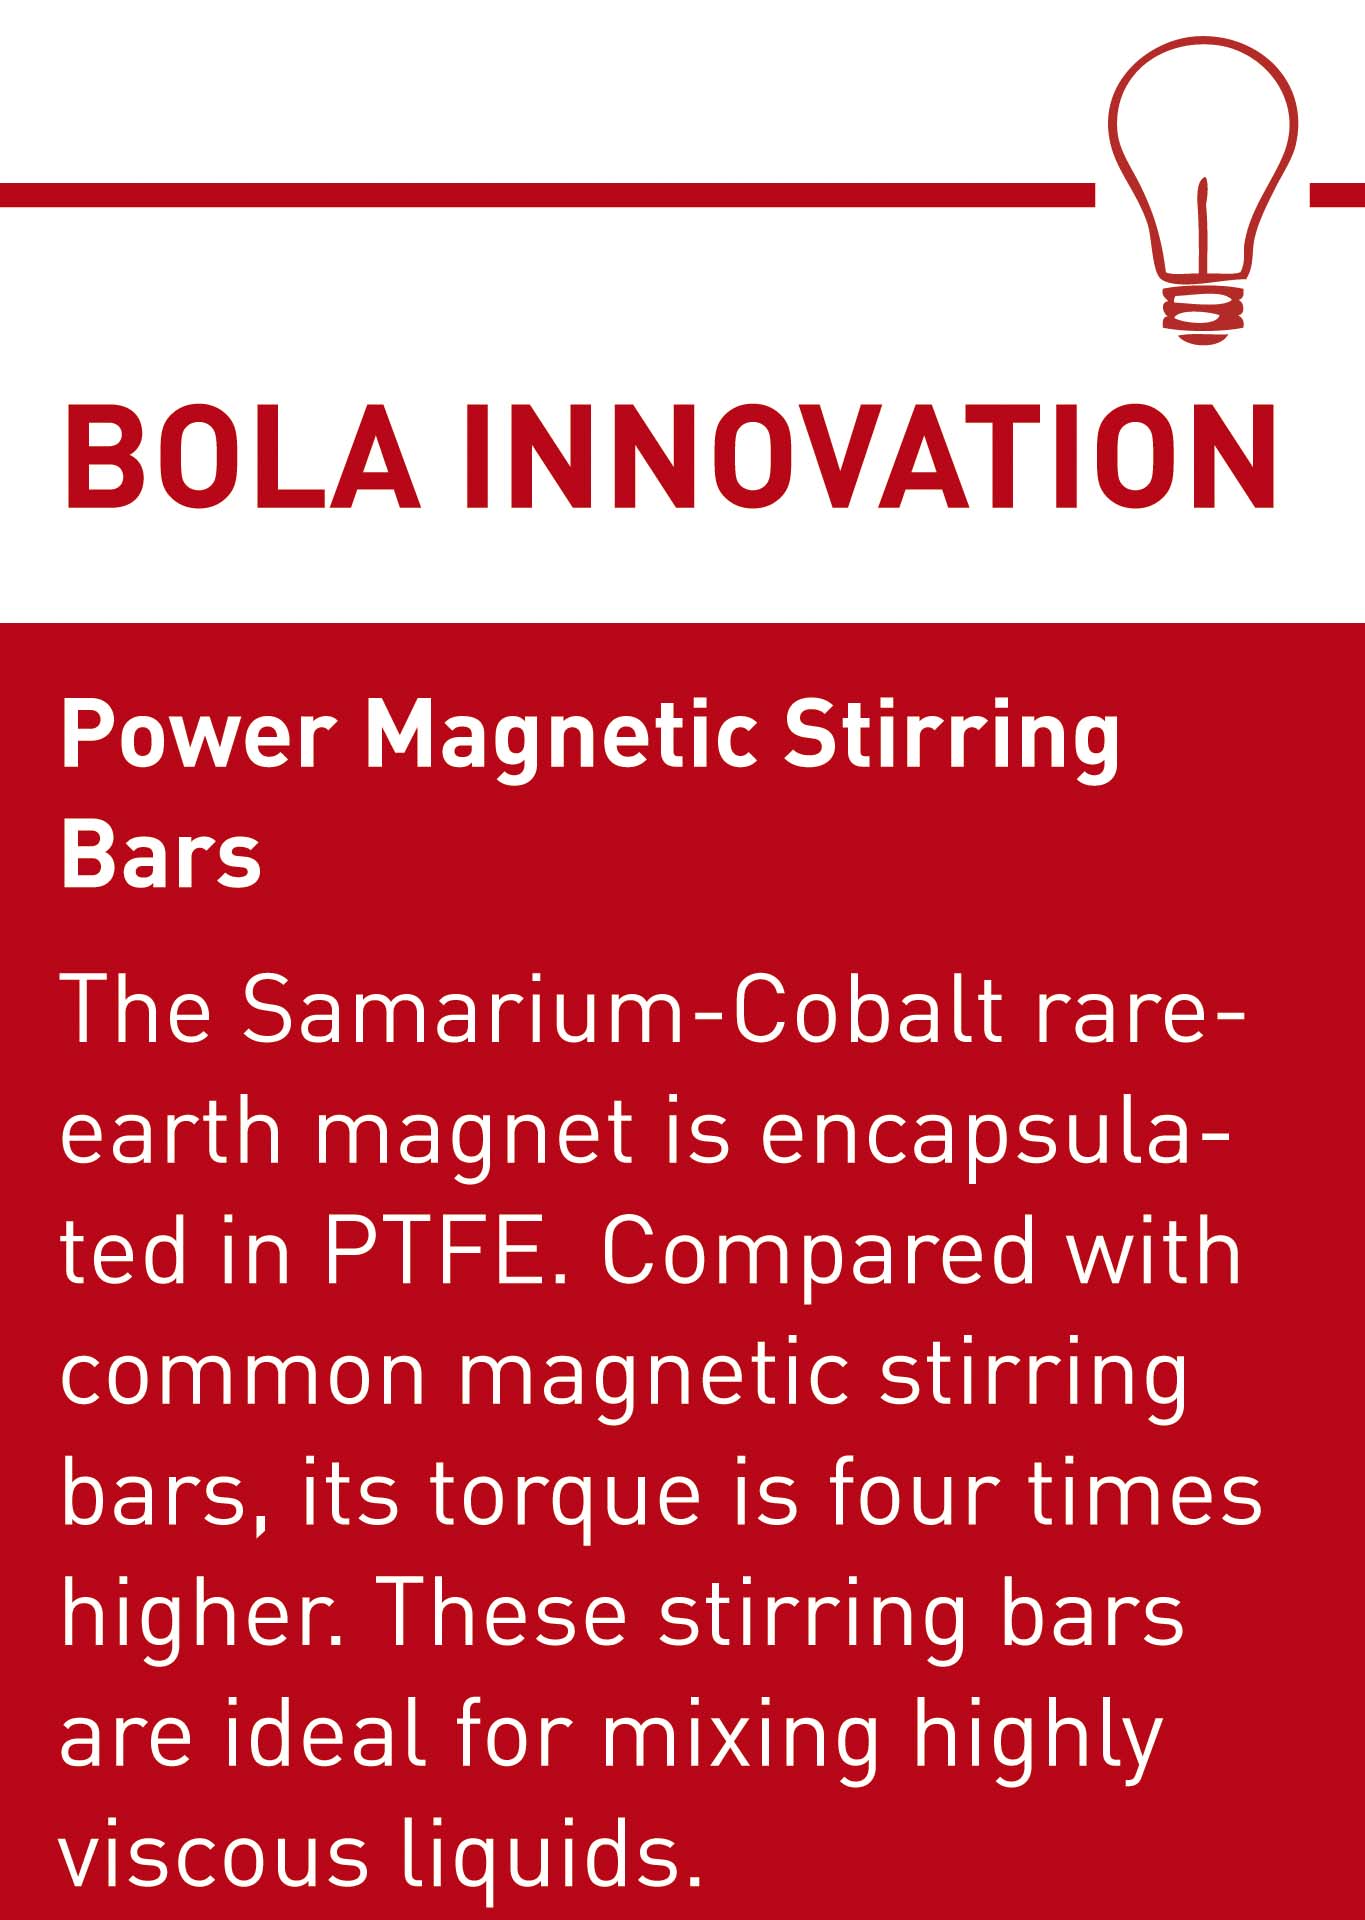 BOLA Innovation Power Magnet E.jpg